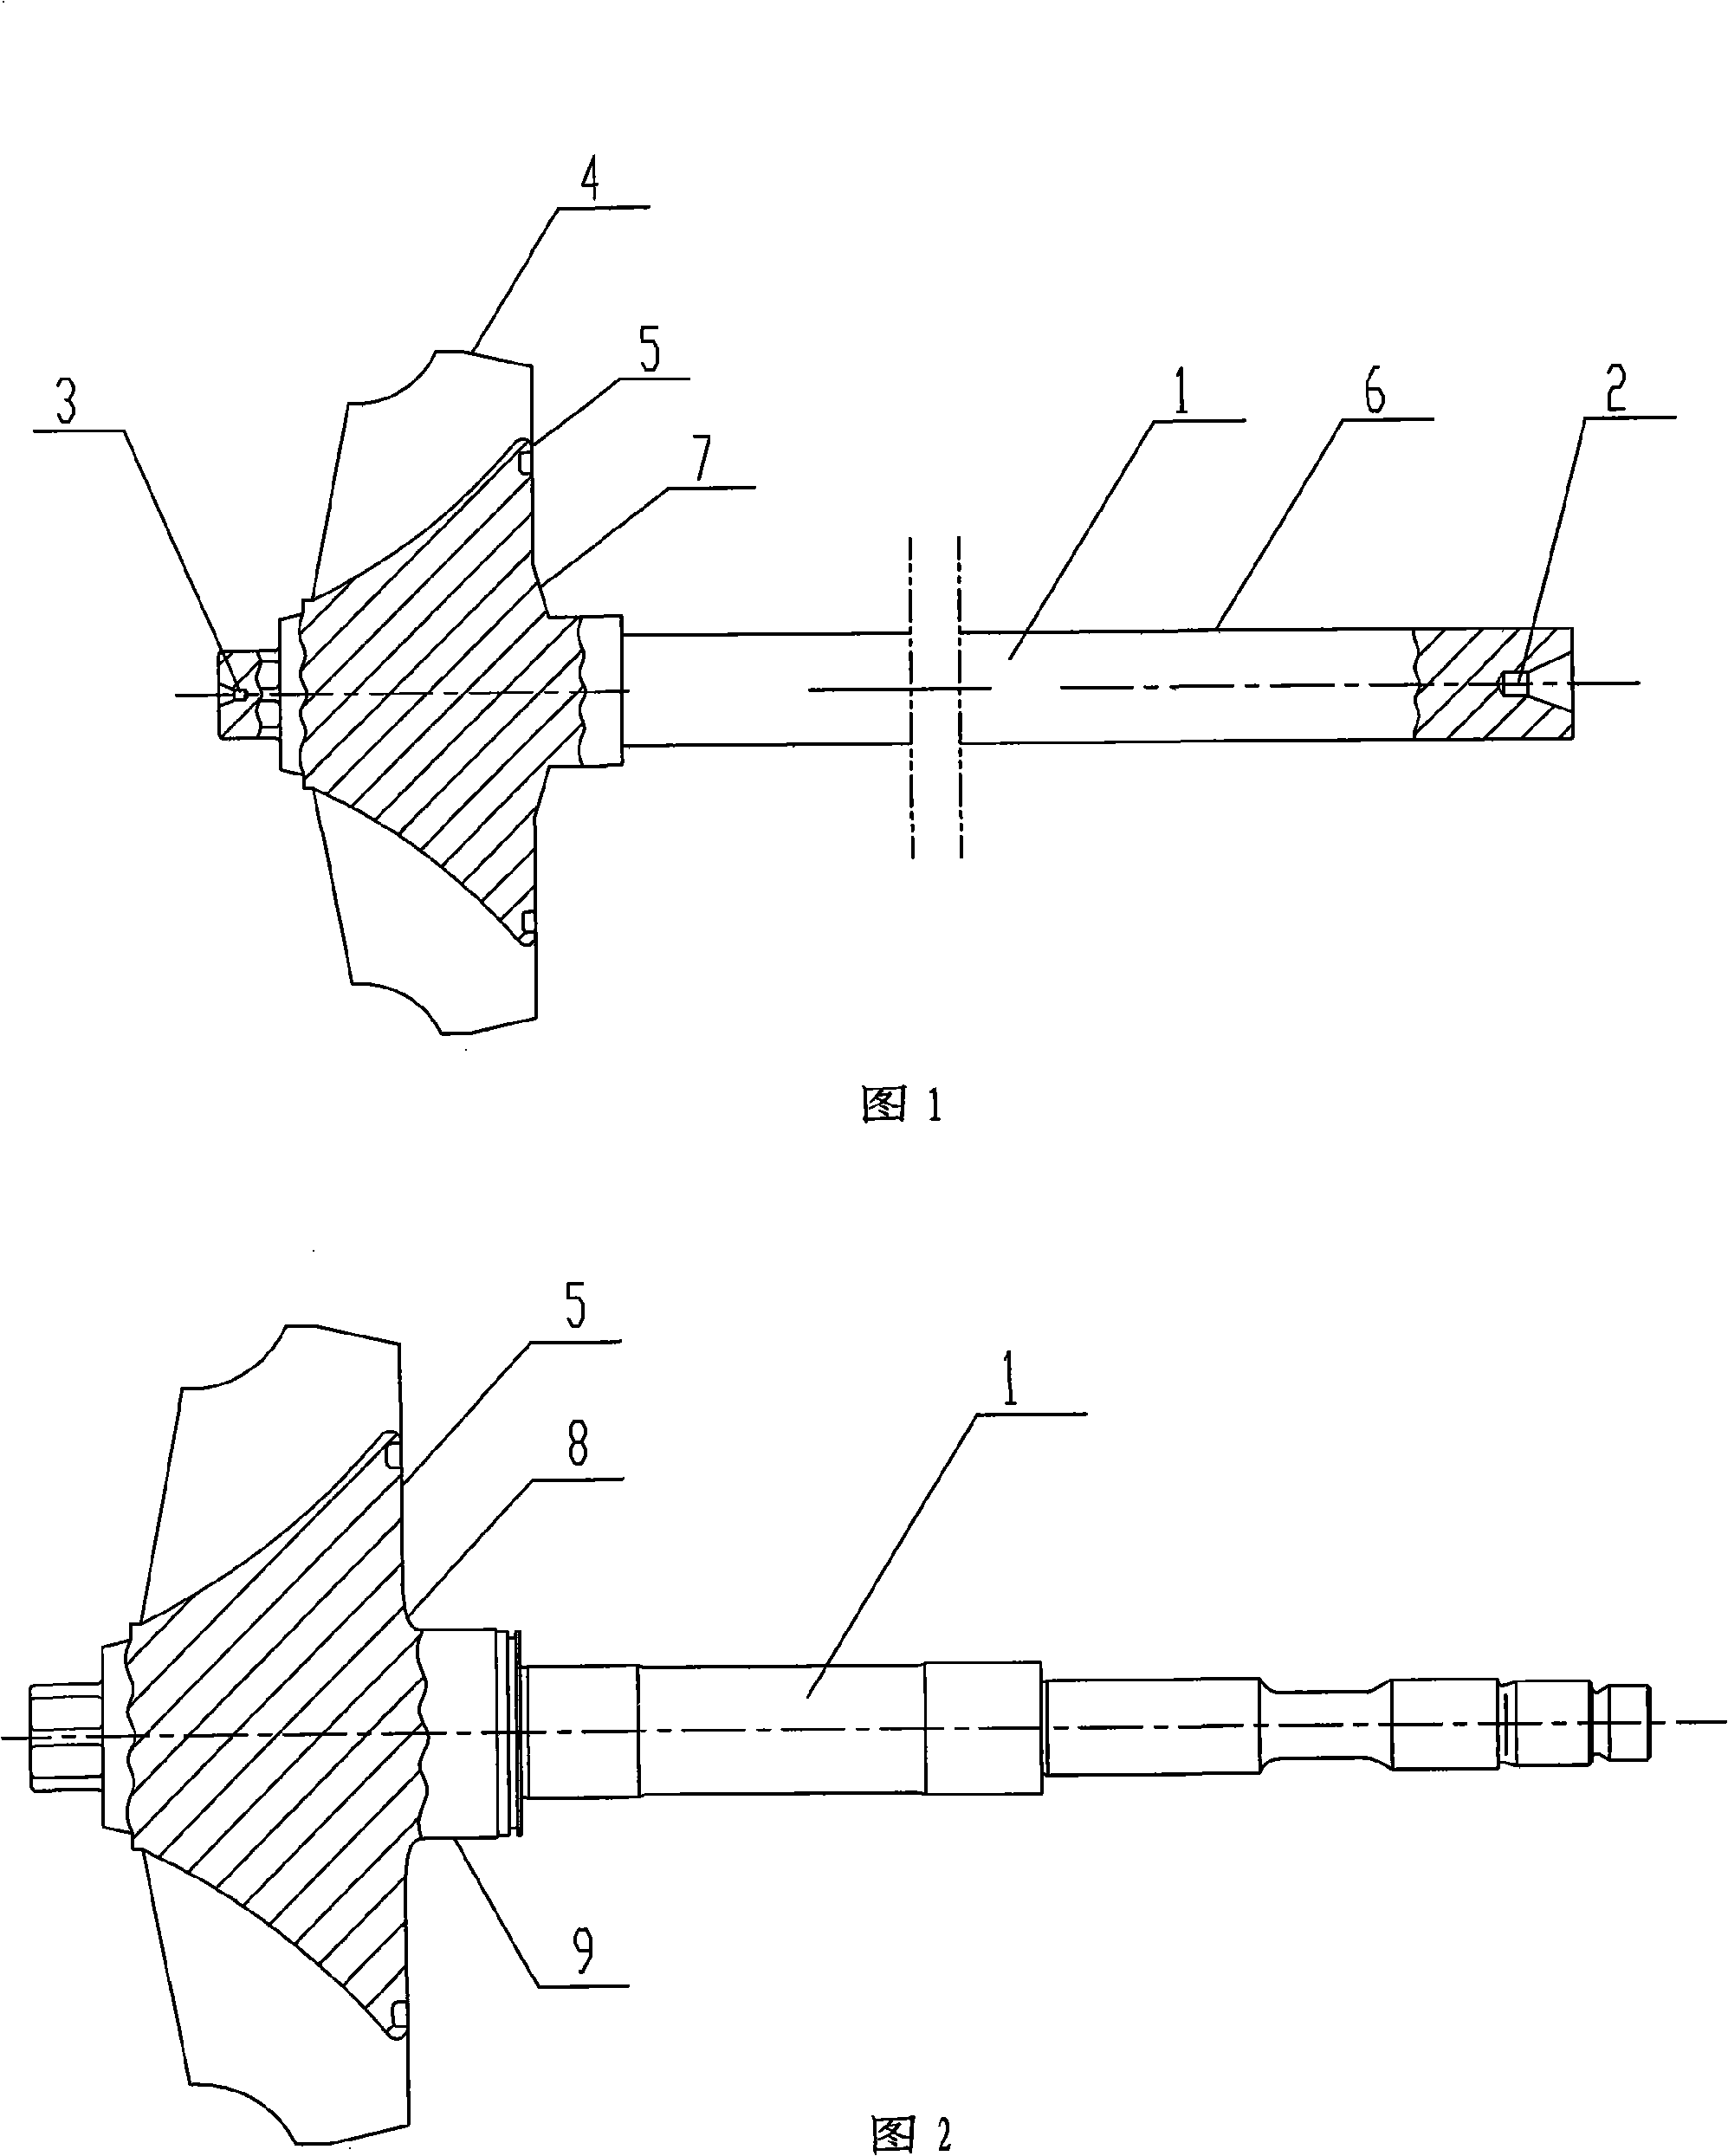 Method for processing turbine runner shaft